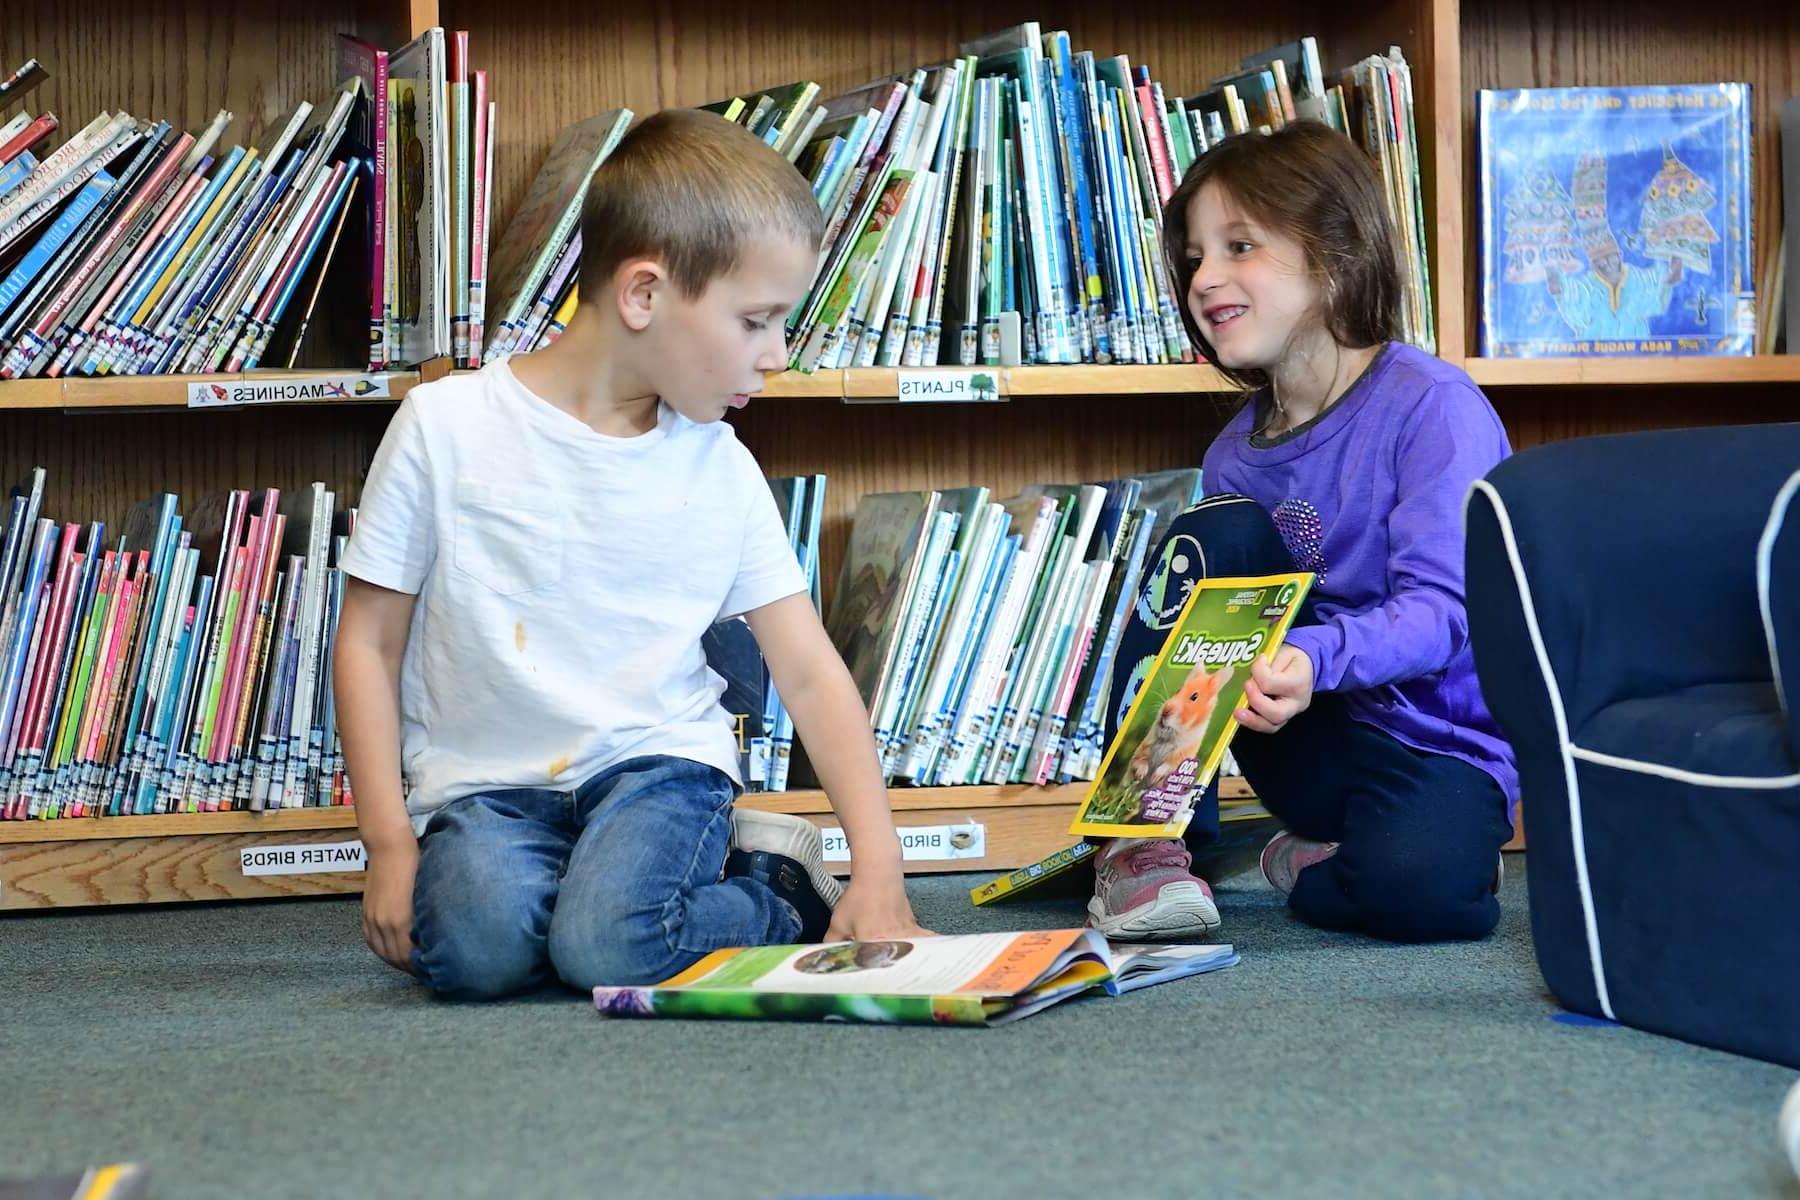 道德文化菲尔德斯顿学校低年级的学生在图书馆分享书籍